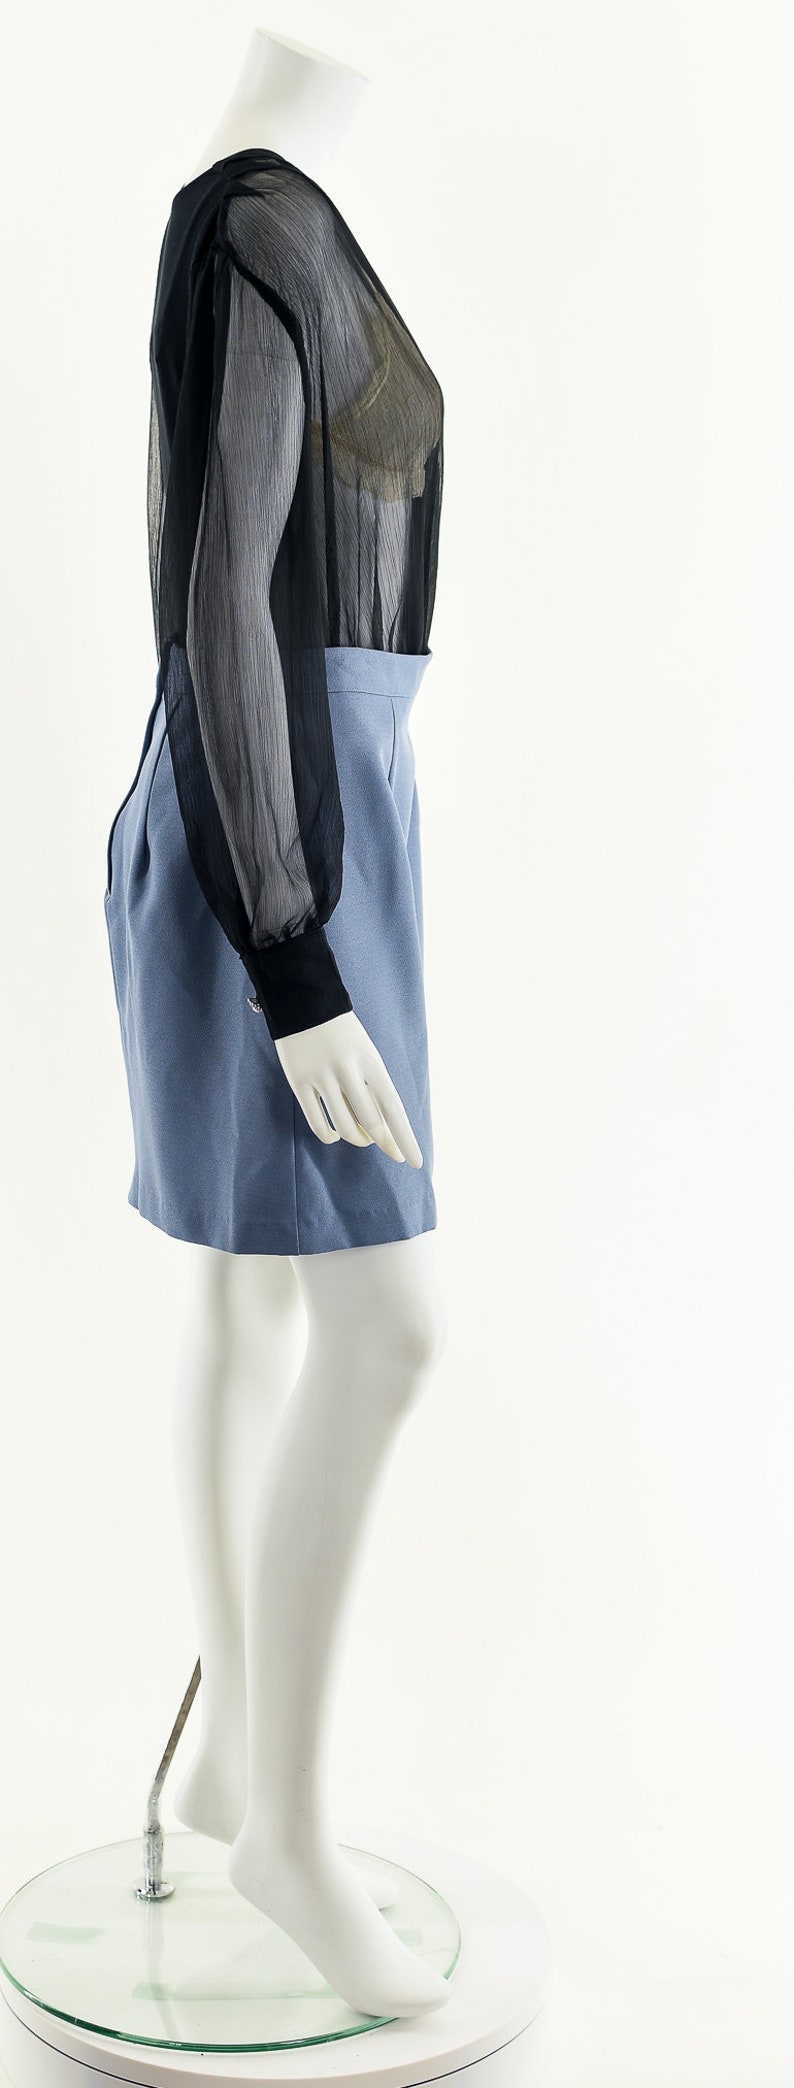 Blue Gray Skirt,90s Skater Skirt,Vintage A Line Skirt,High Waist Skirt,Vintage Mini Skirt,Vintage Scooter Skirt,Periwinkle Gray Skirt,Iconic image 5